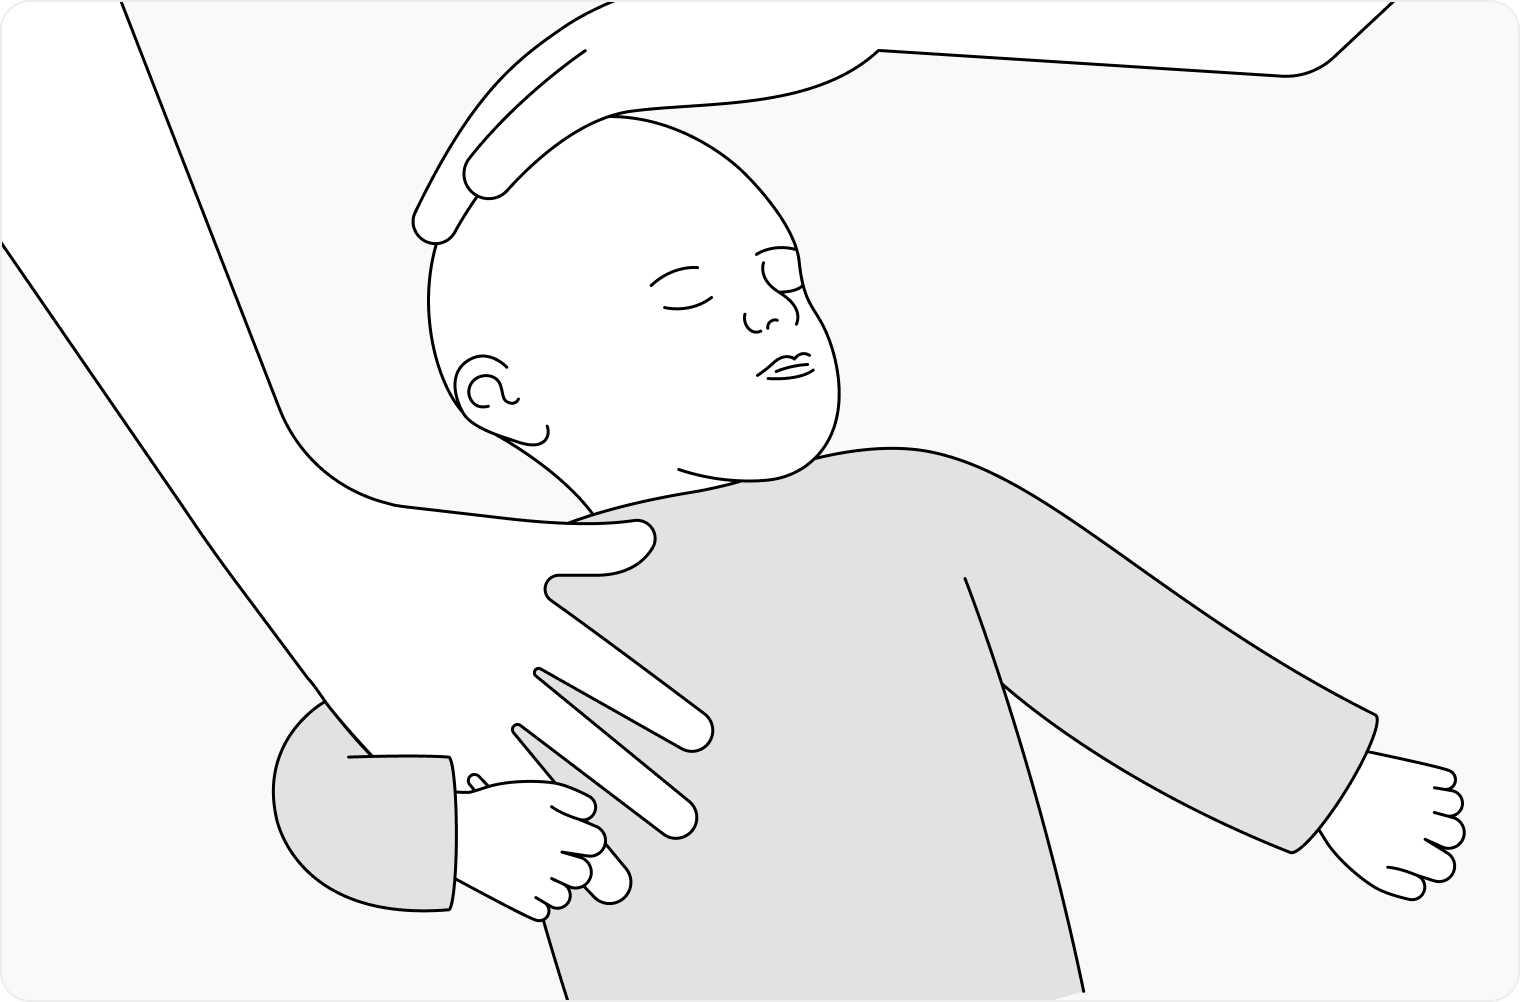 Попробовать удержать голову в таком положении хотя бы на две секунды, затем аккуратно позволить ребенку вернуть голову в привычное положение